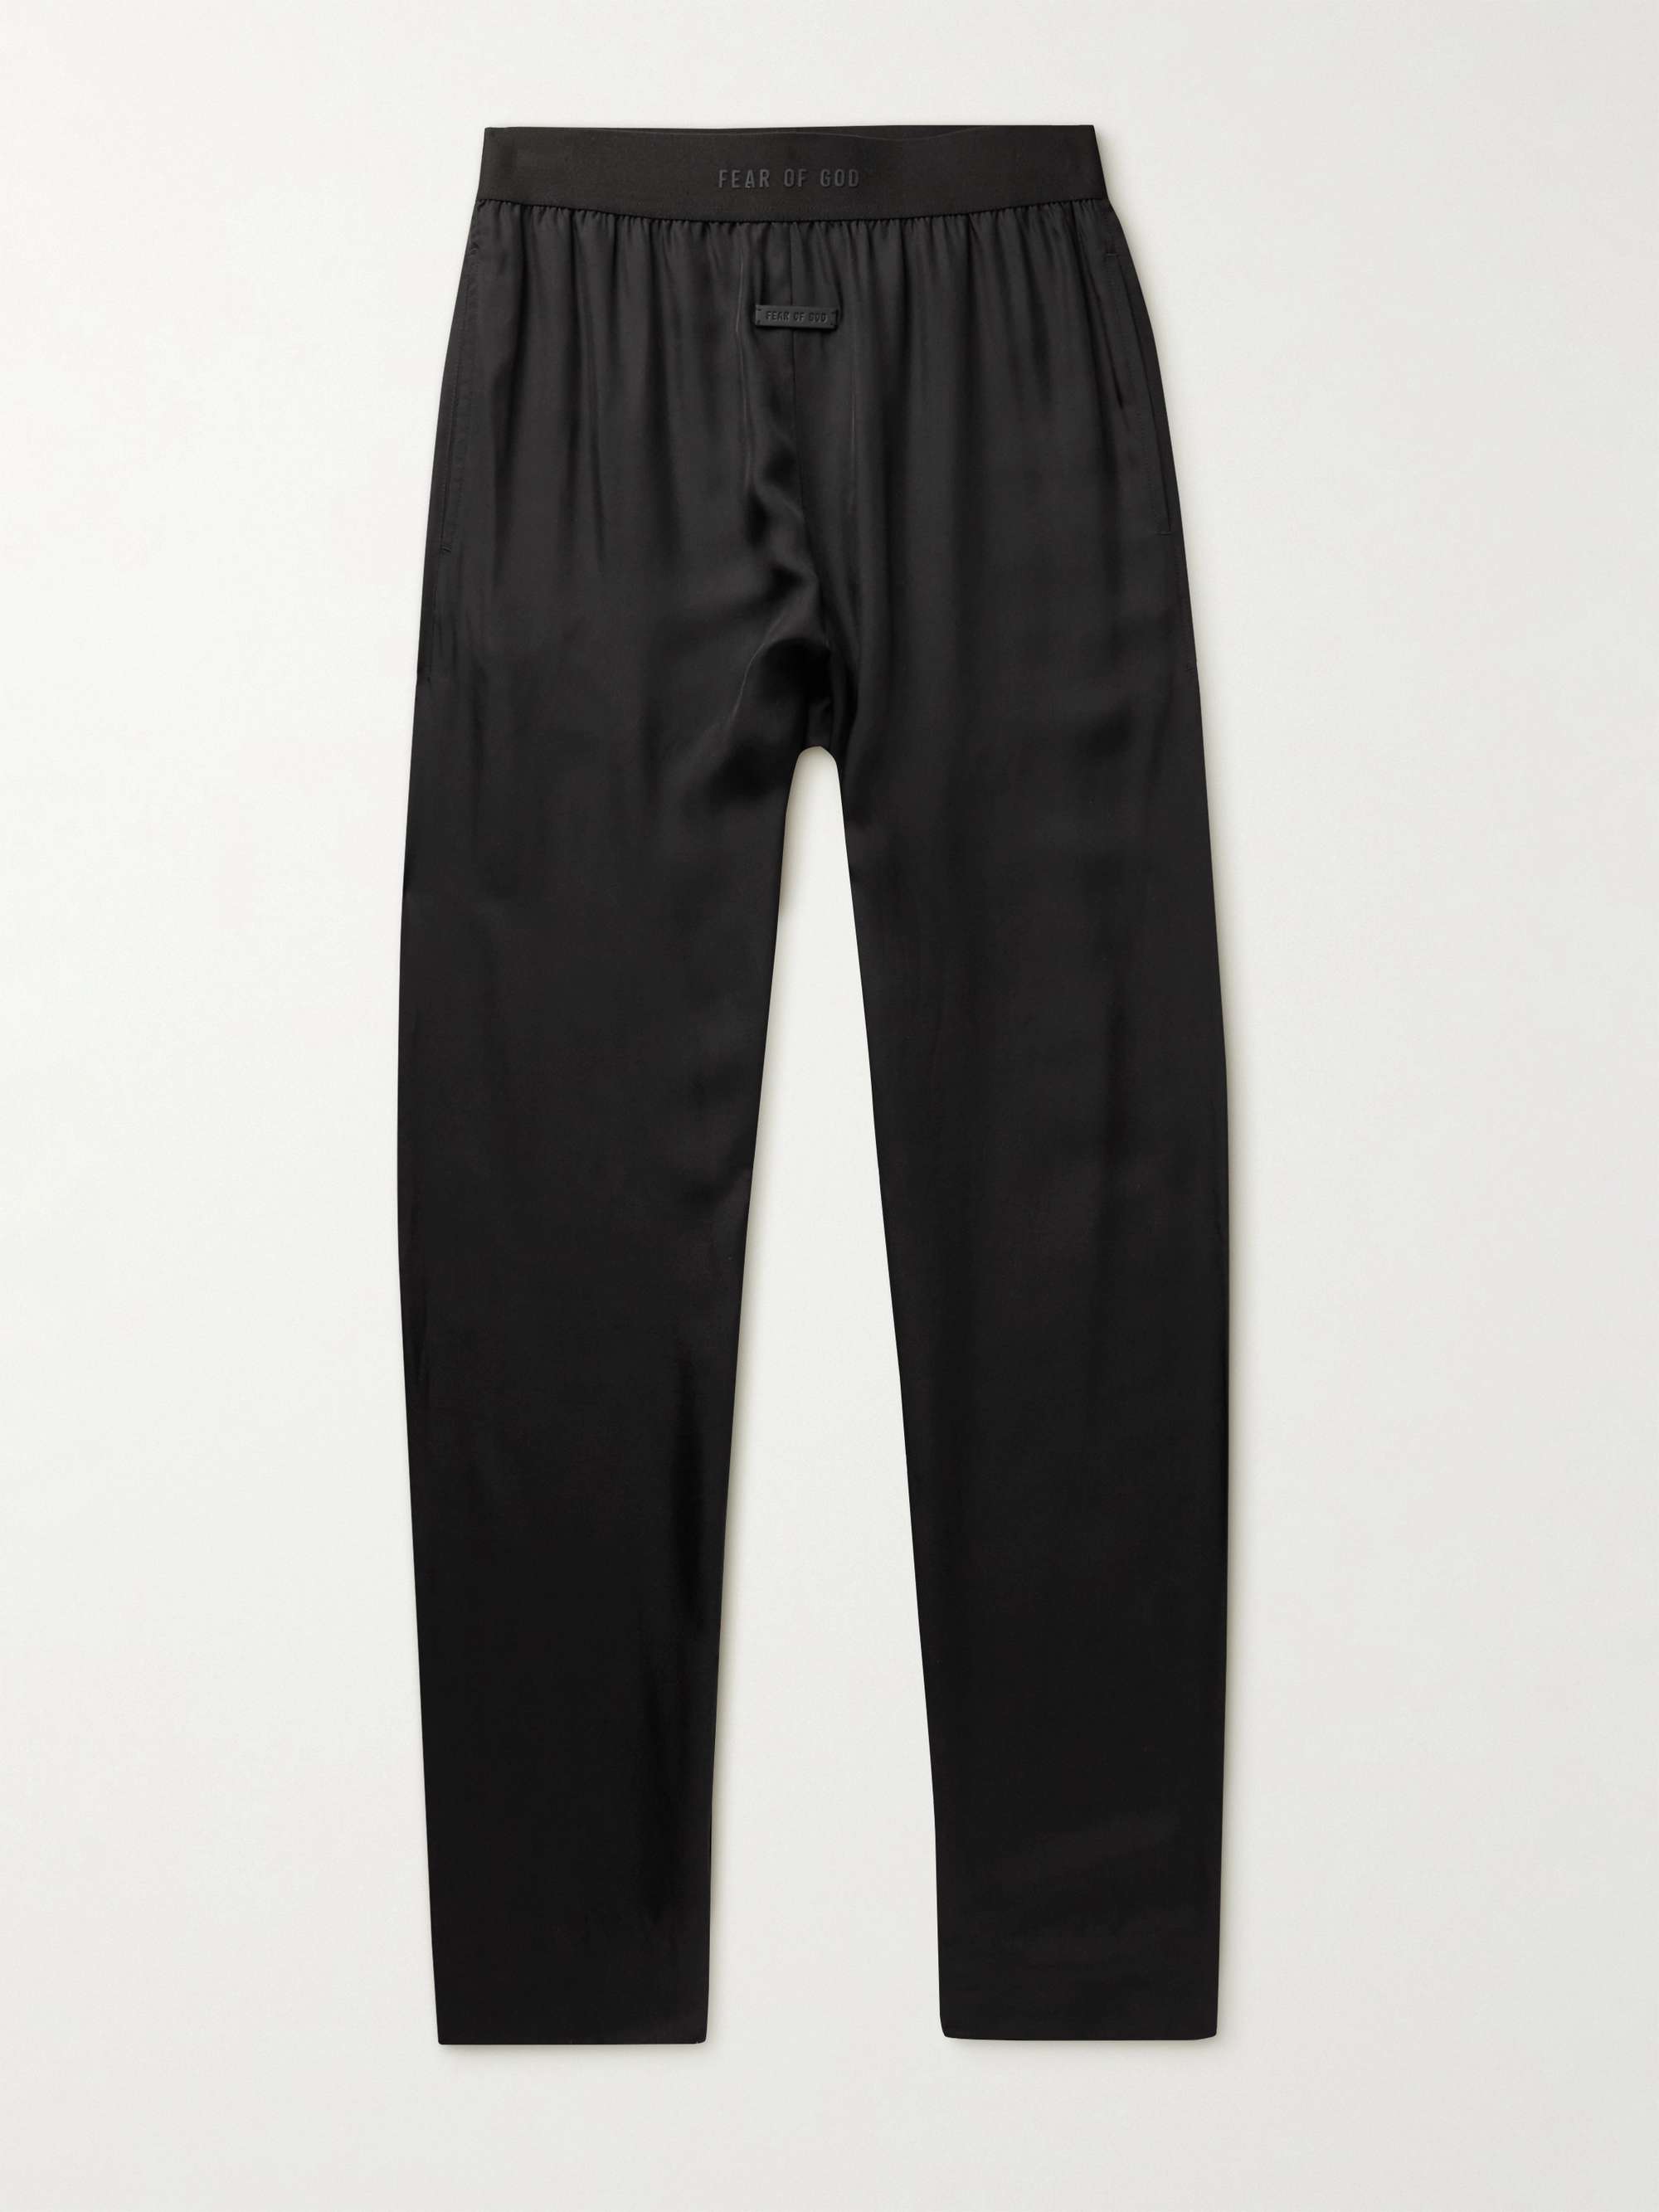 FEAR OF GOD Satin-Twill Pyjama Trousers,Black